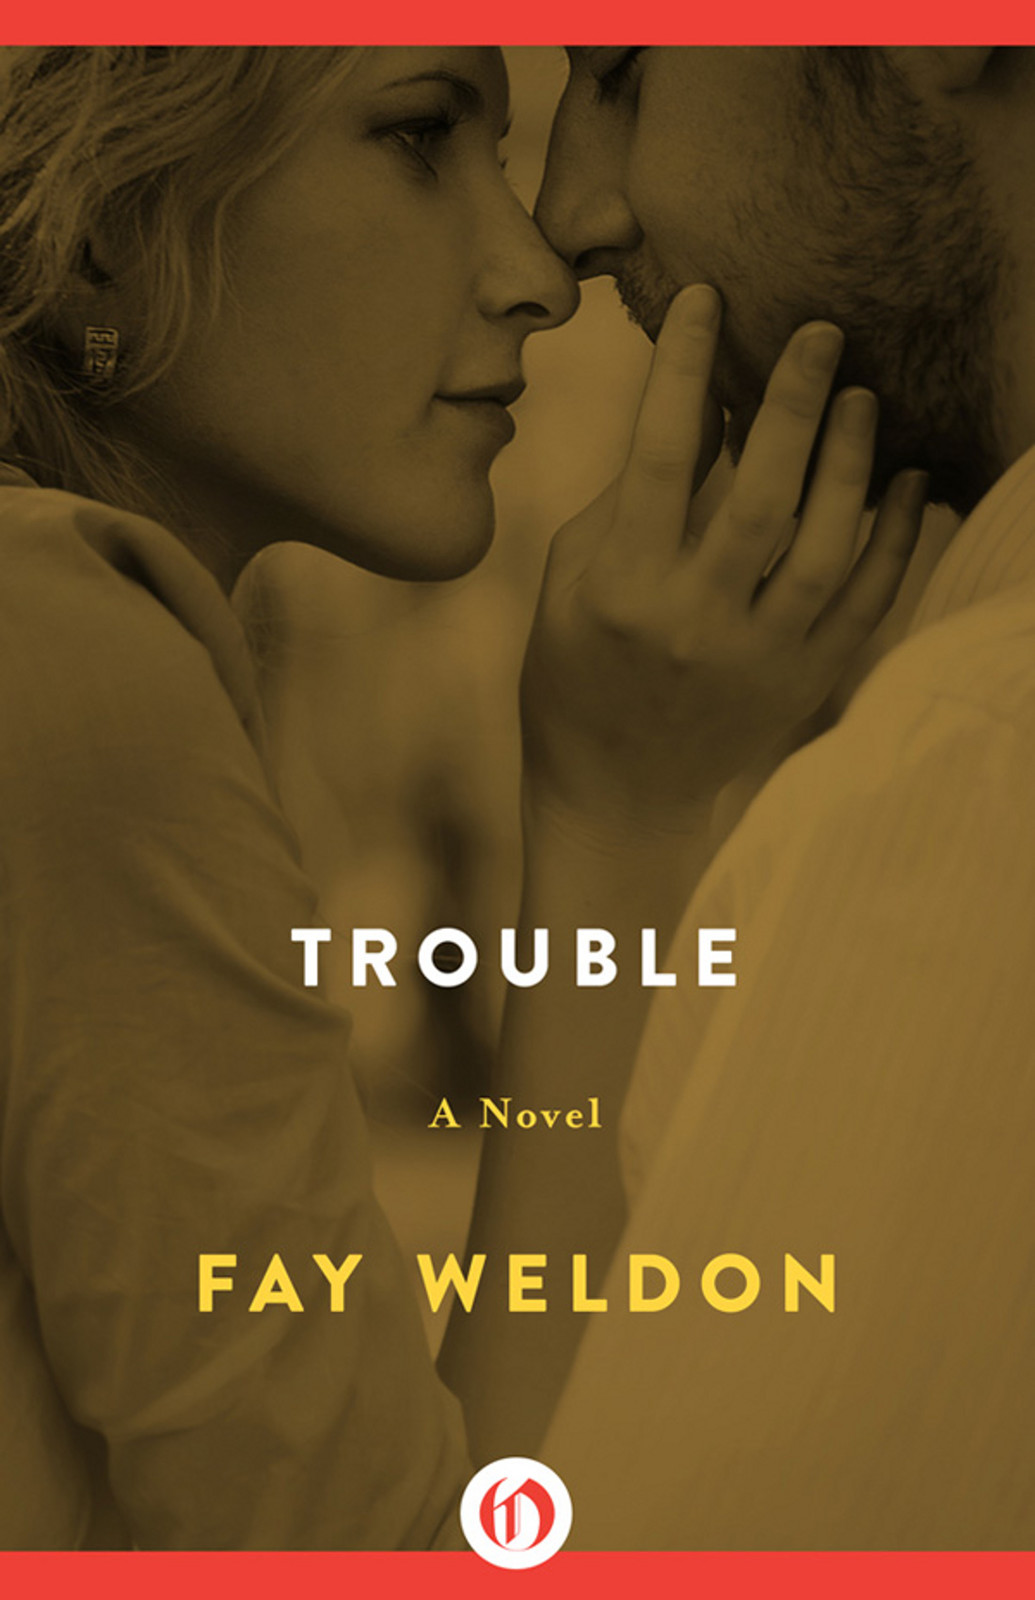 Trouble by Fay Weldon